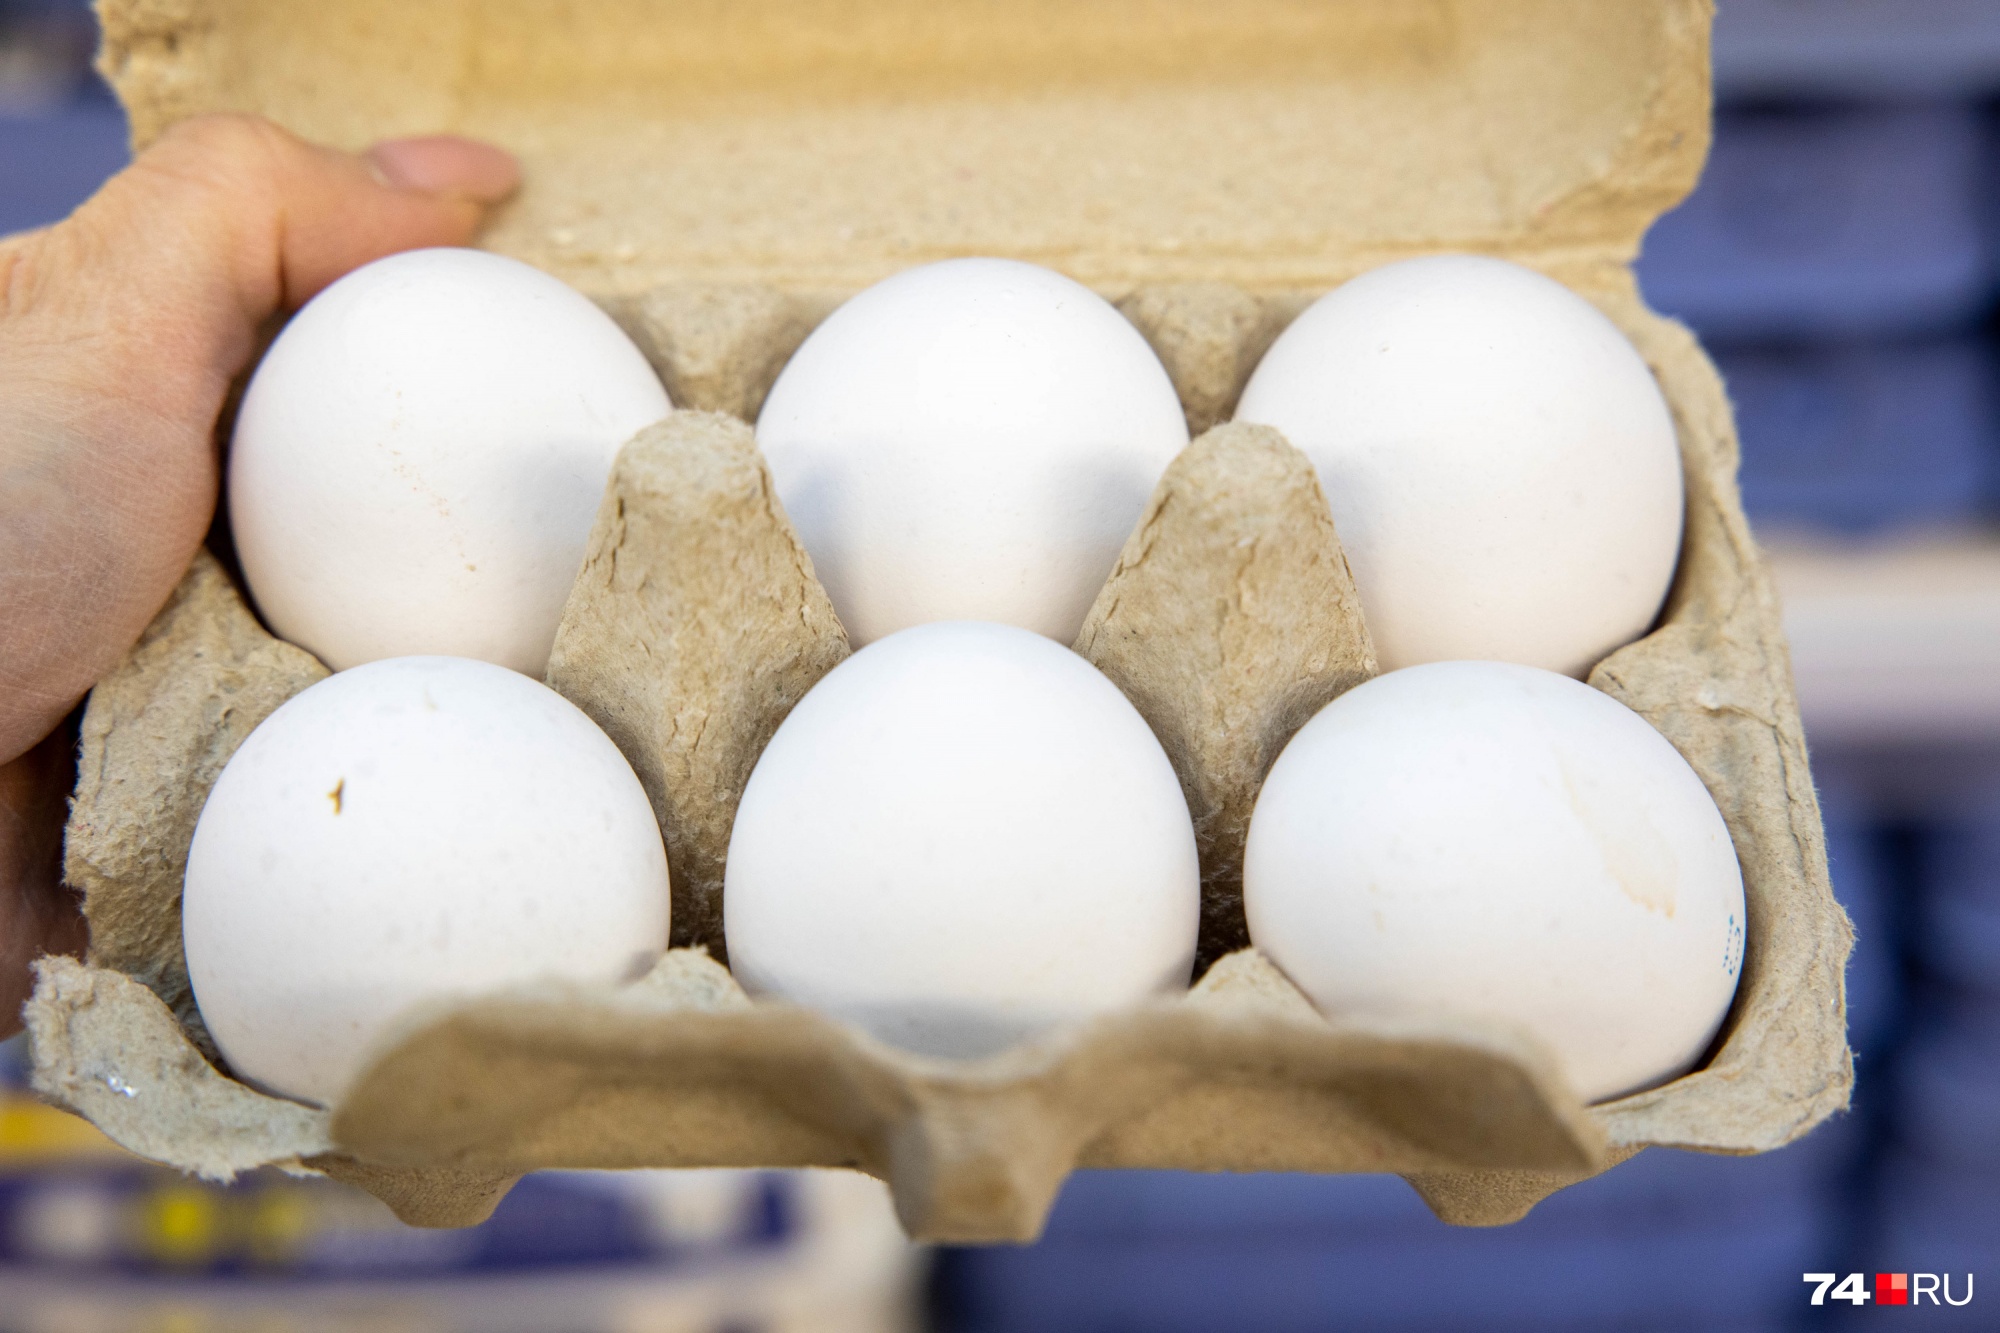 В SPAR можно даже купить упаковку из шести яиц (С1), производитель — ЧЕПФА, цена — 65,99 рубля